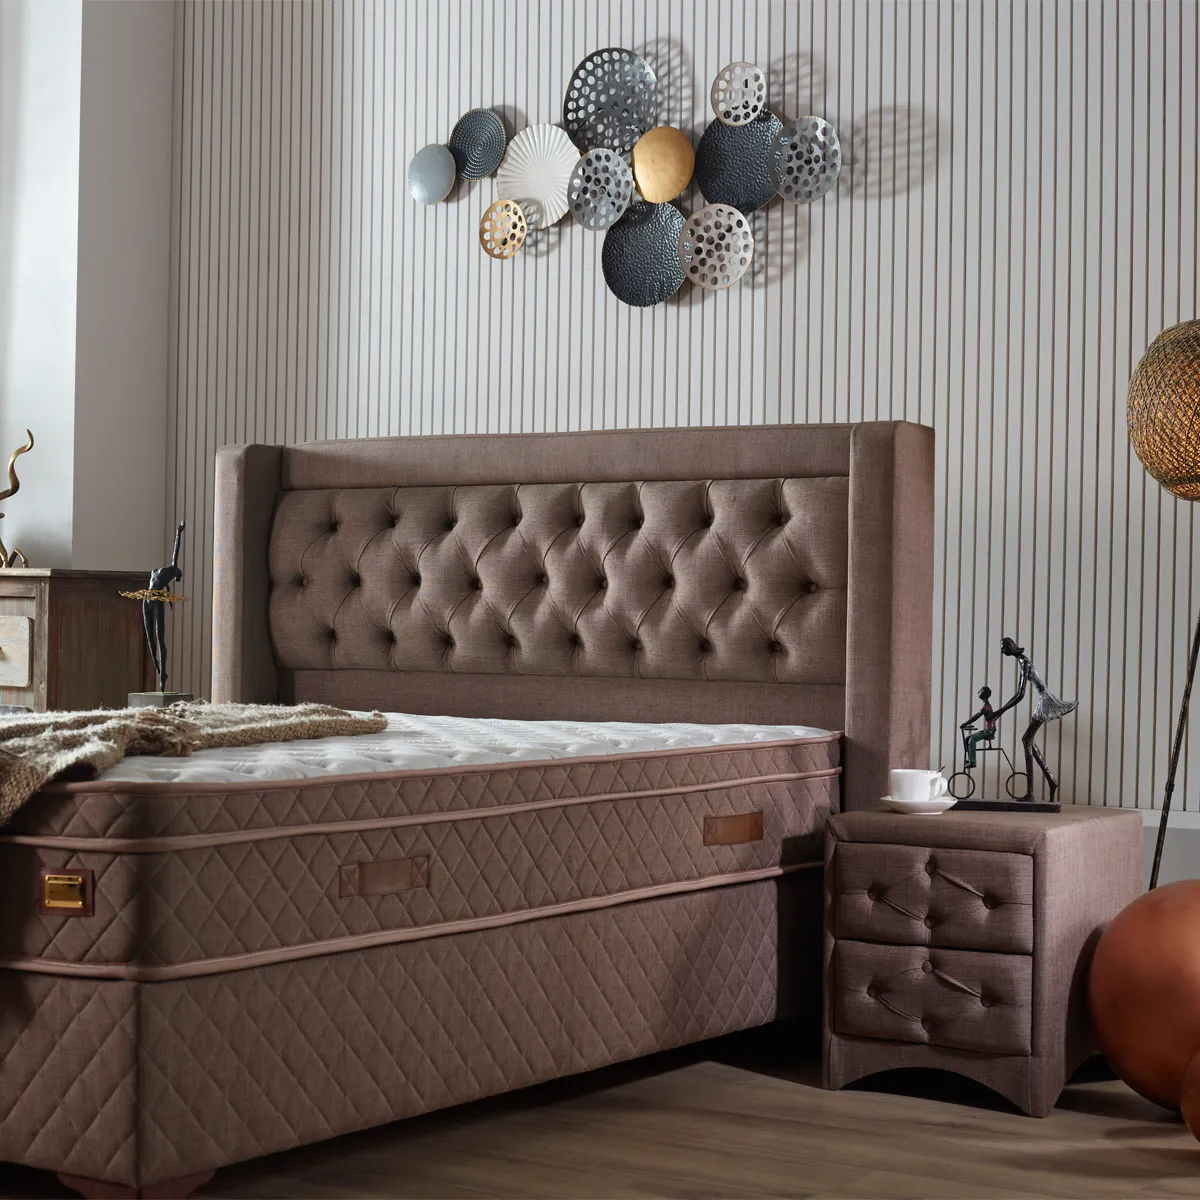 Type minimaliste confortable Double cadre de lit confortable matelas King Size dernier meubles de chambre à coucher de style européen